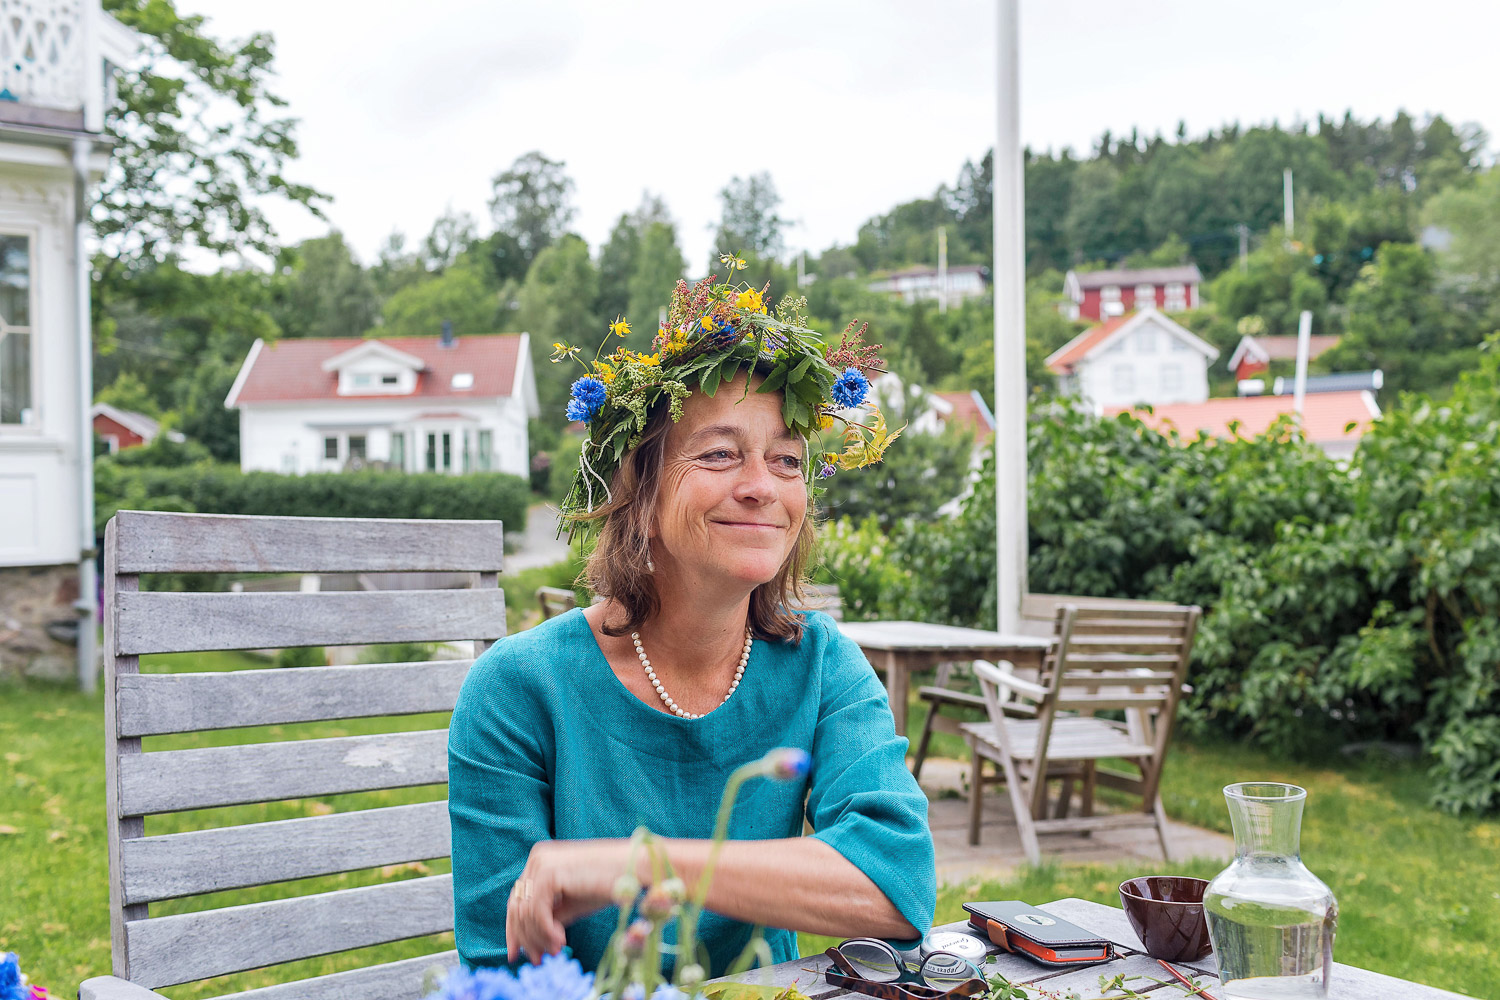 Vibs, the sweet owner of Slussen Pensionat, in her Midsummer flower crown 